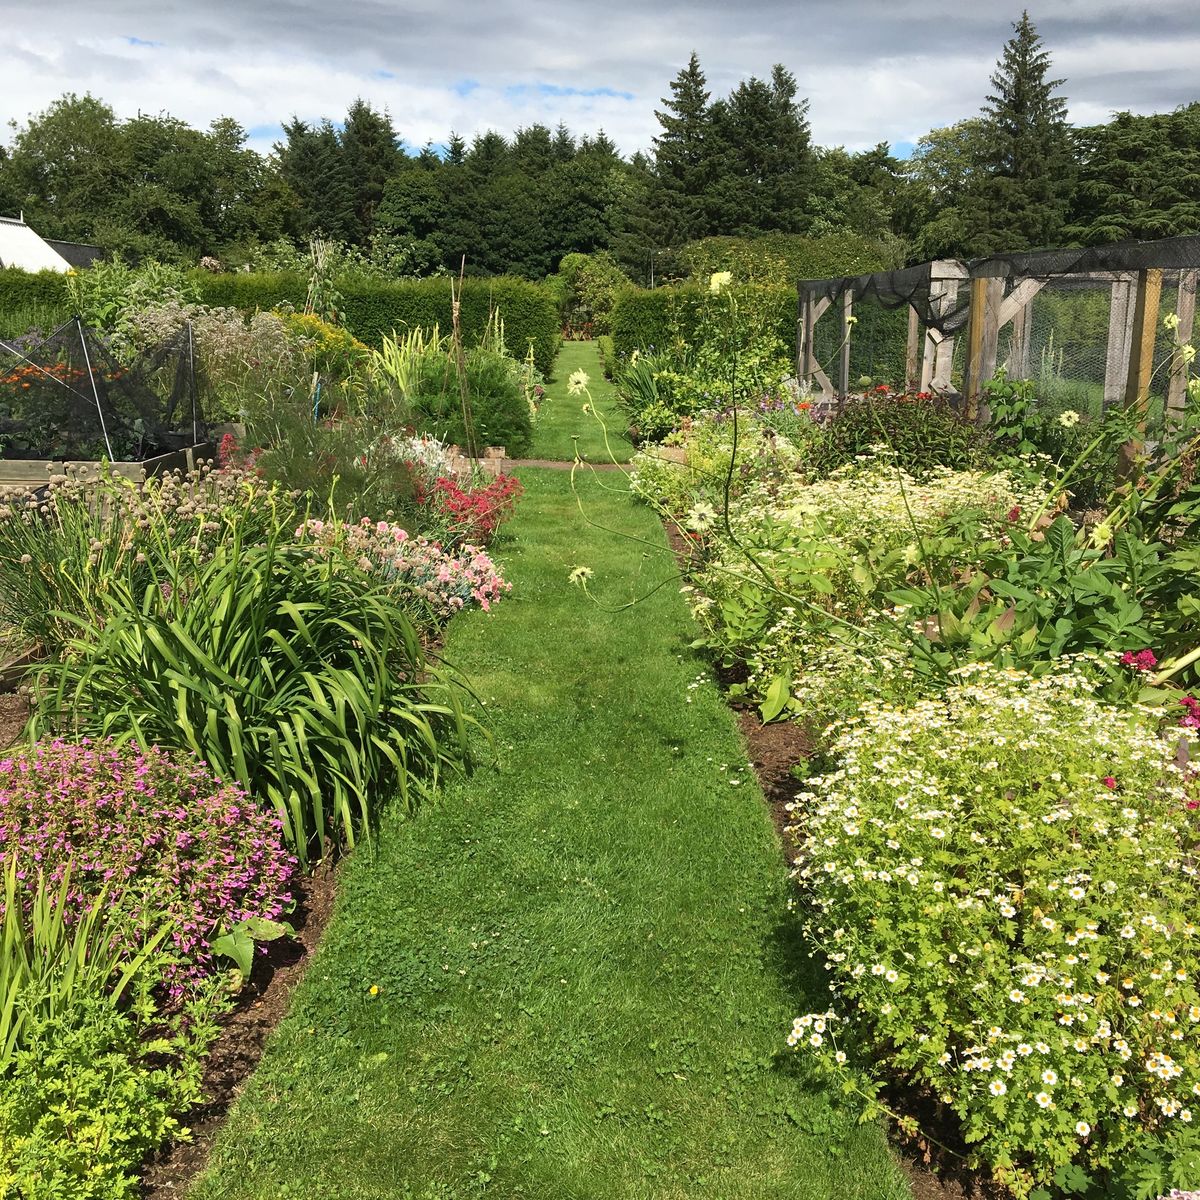 The Herbalist's Garden at Logie